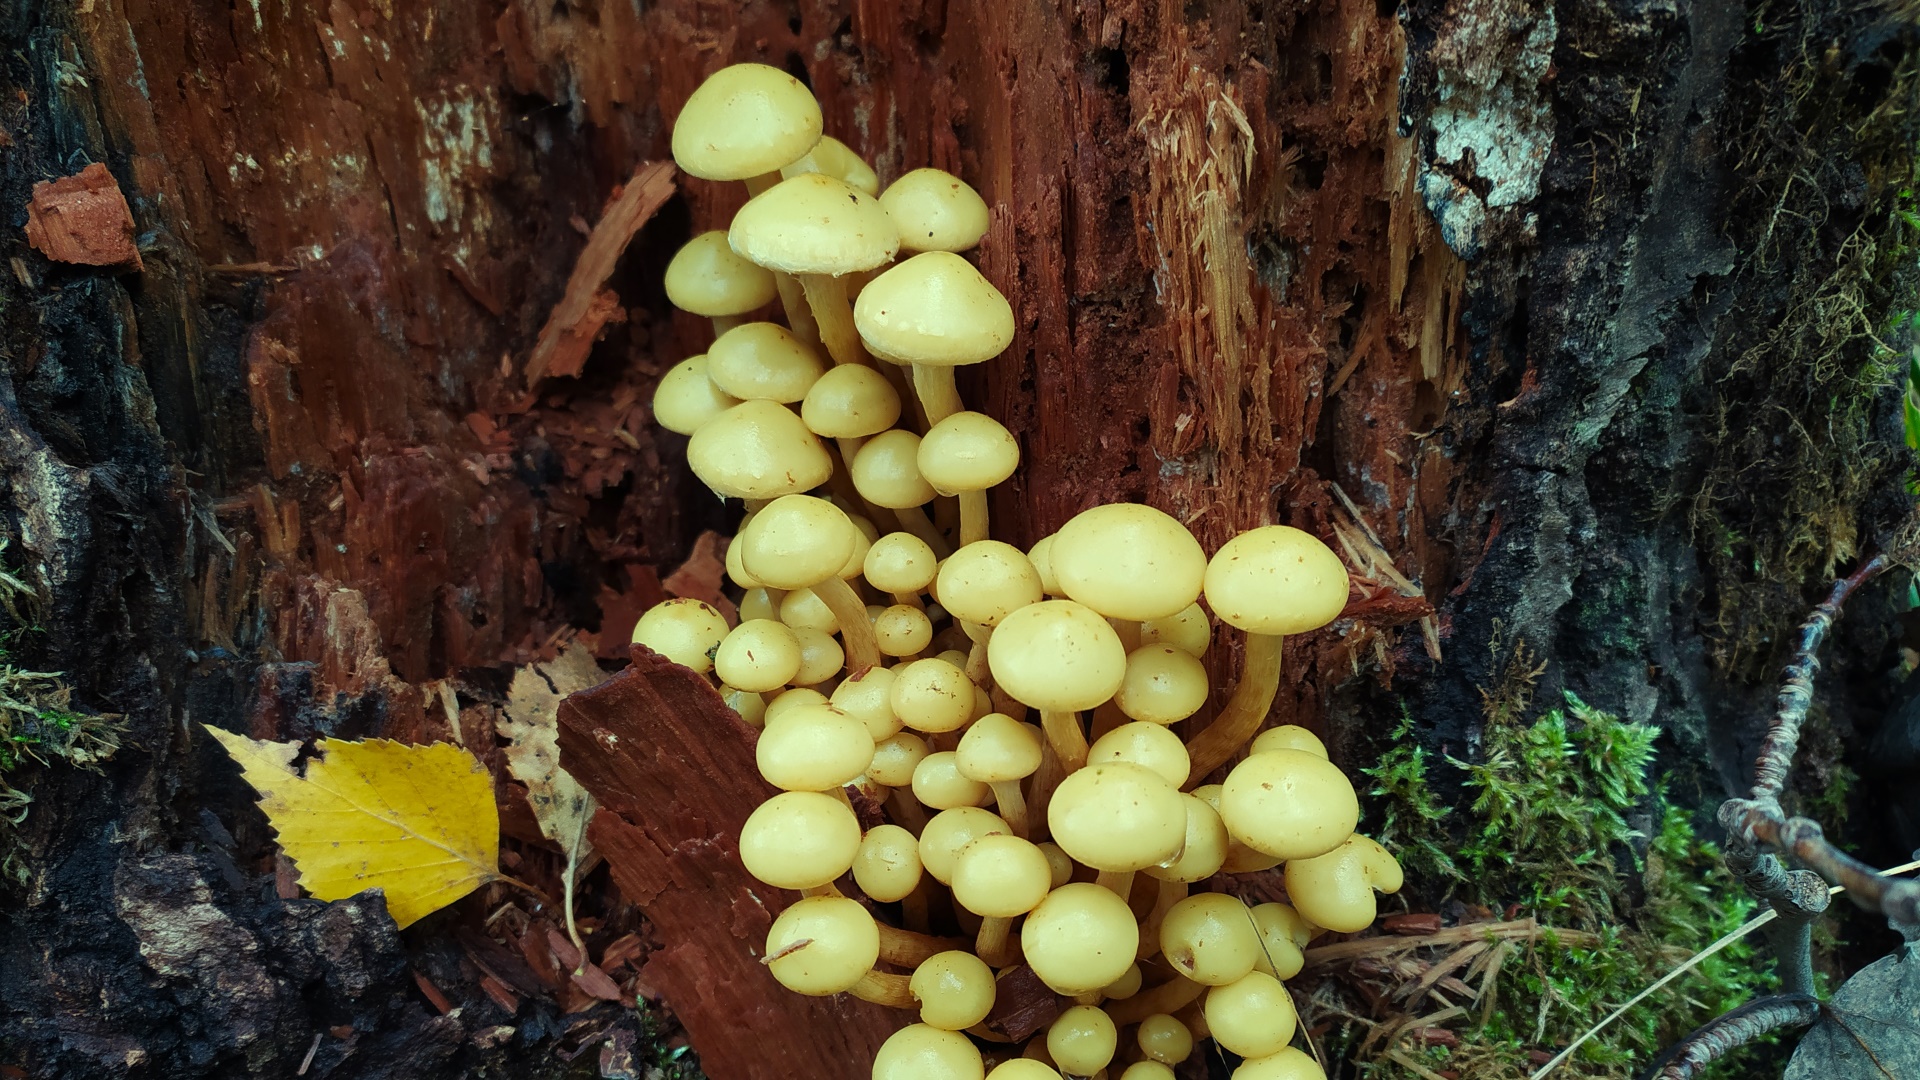 Чешуйчатка ольховая (Pholiota alnicola). Как выглядит гриб на месте произрастания.